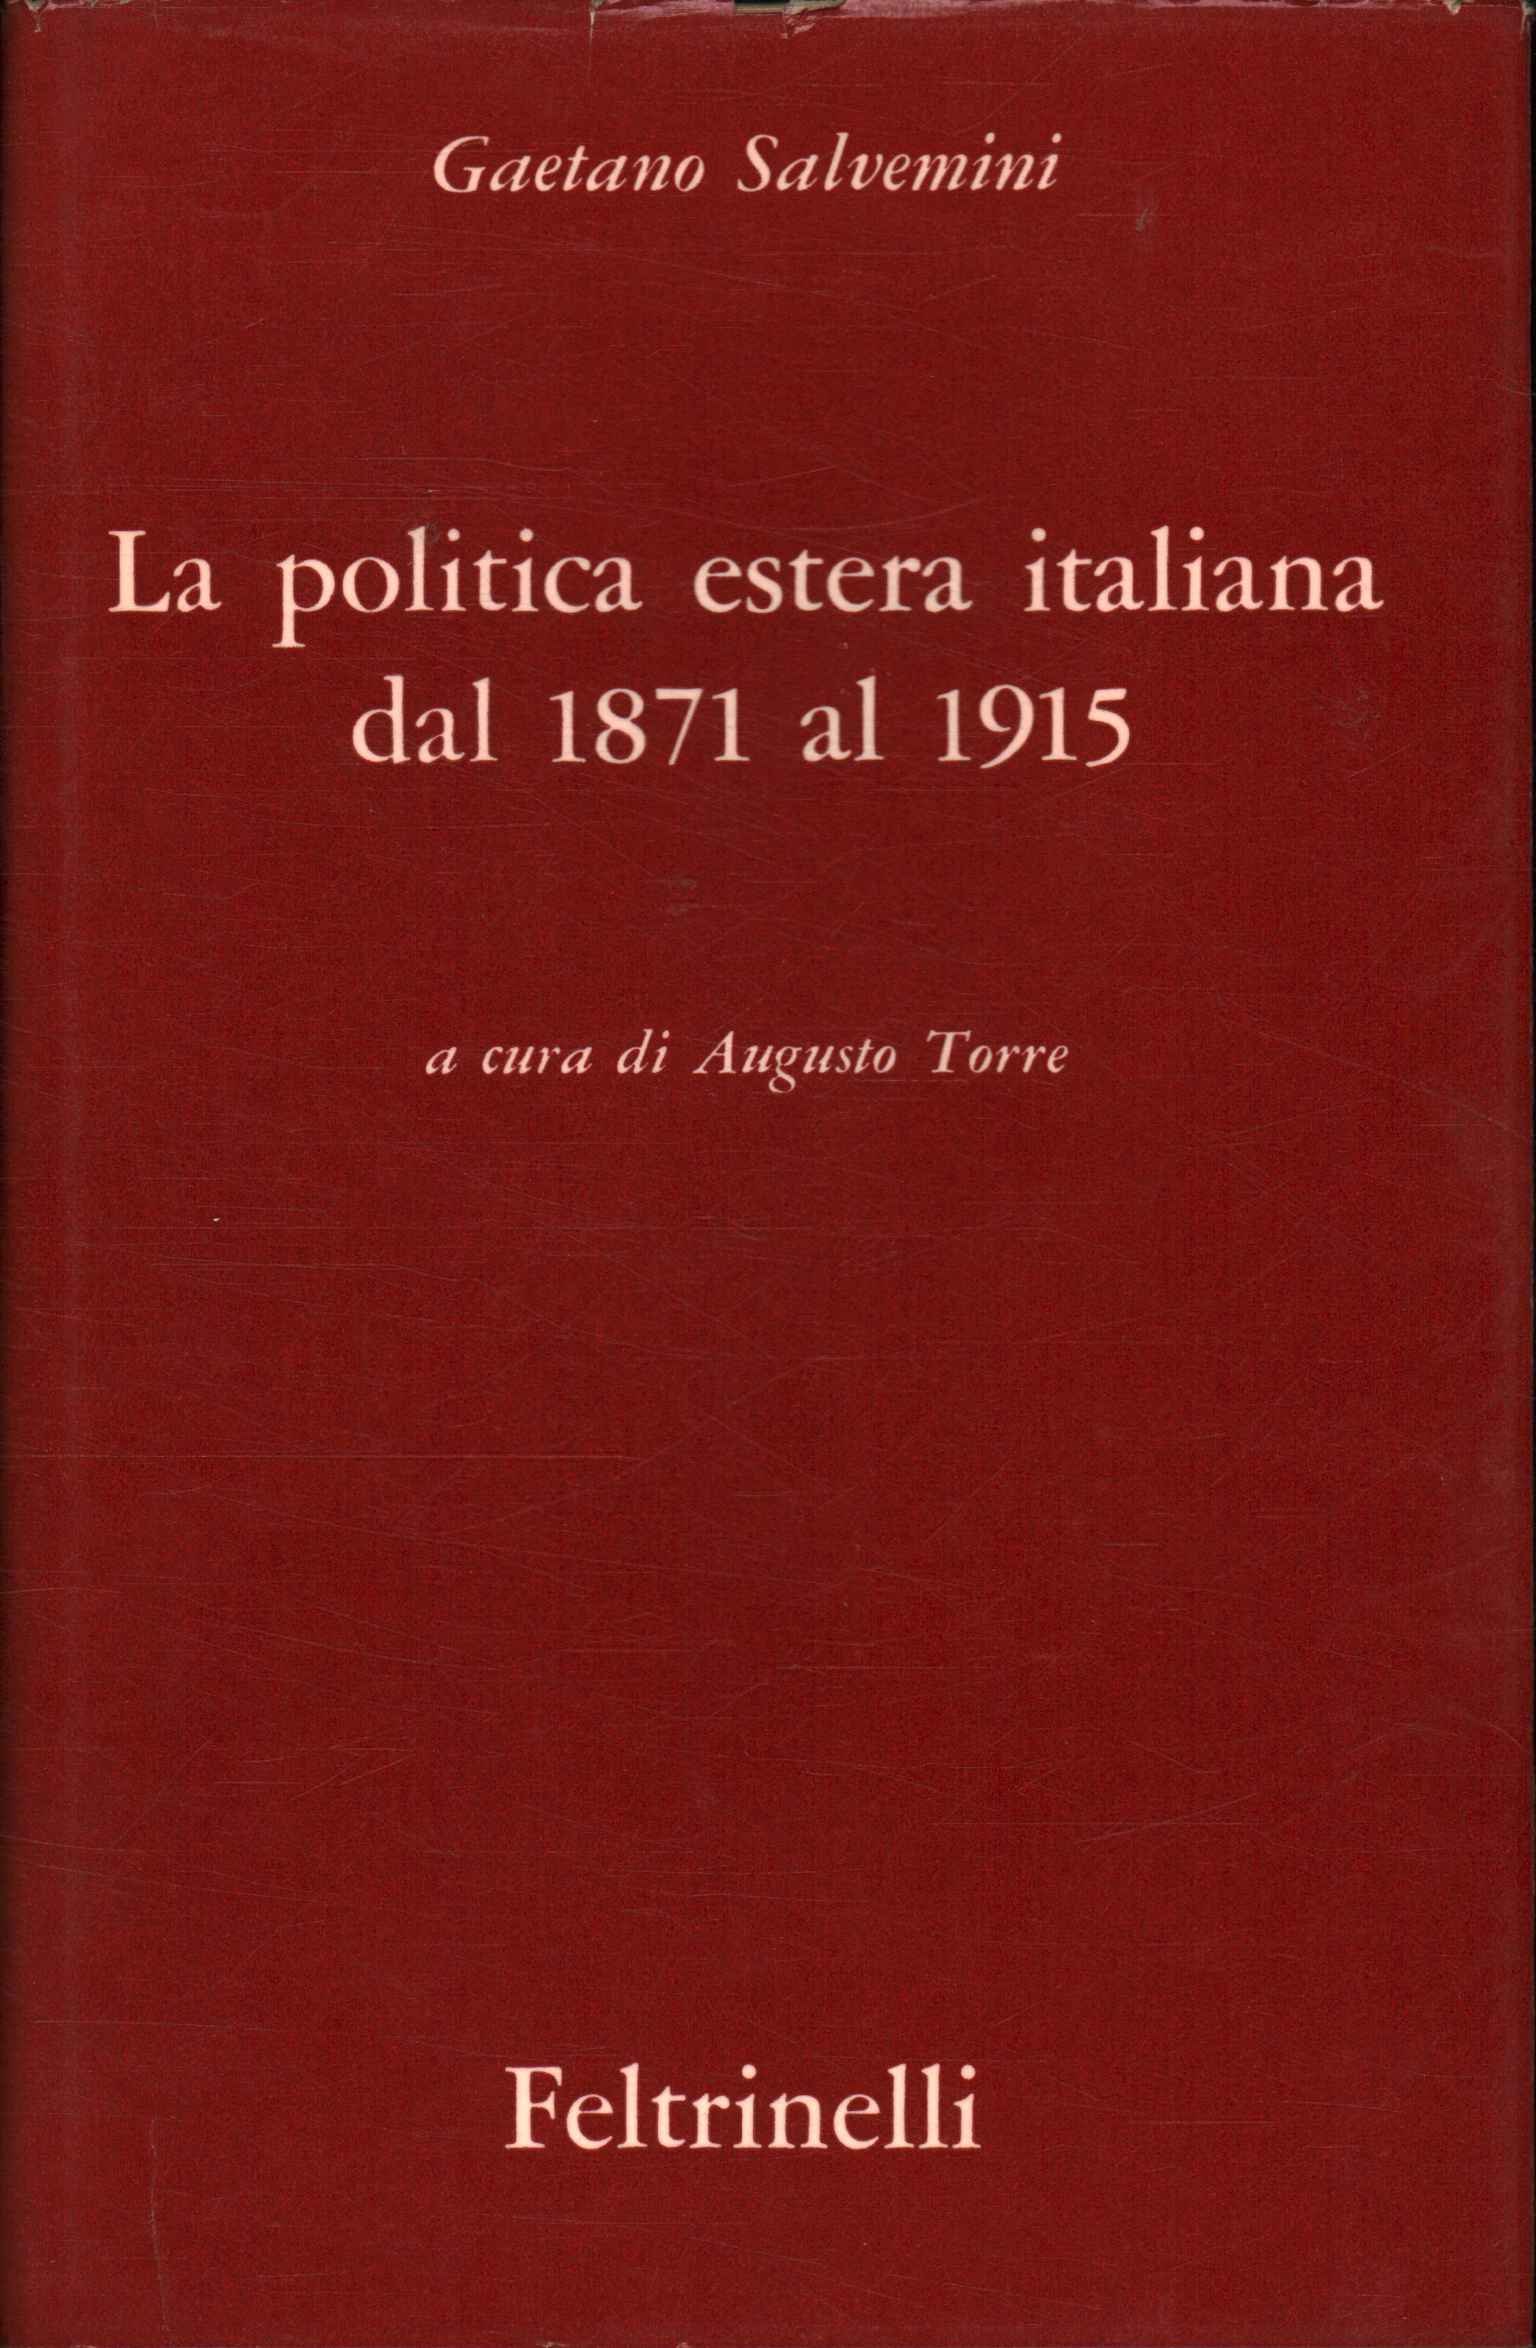 Italienische Außenpolitik ab 1871 v. Chr